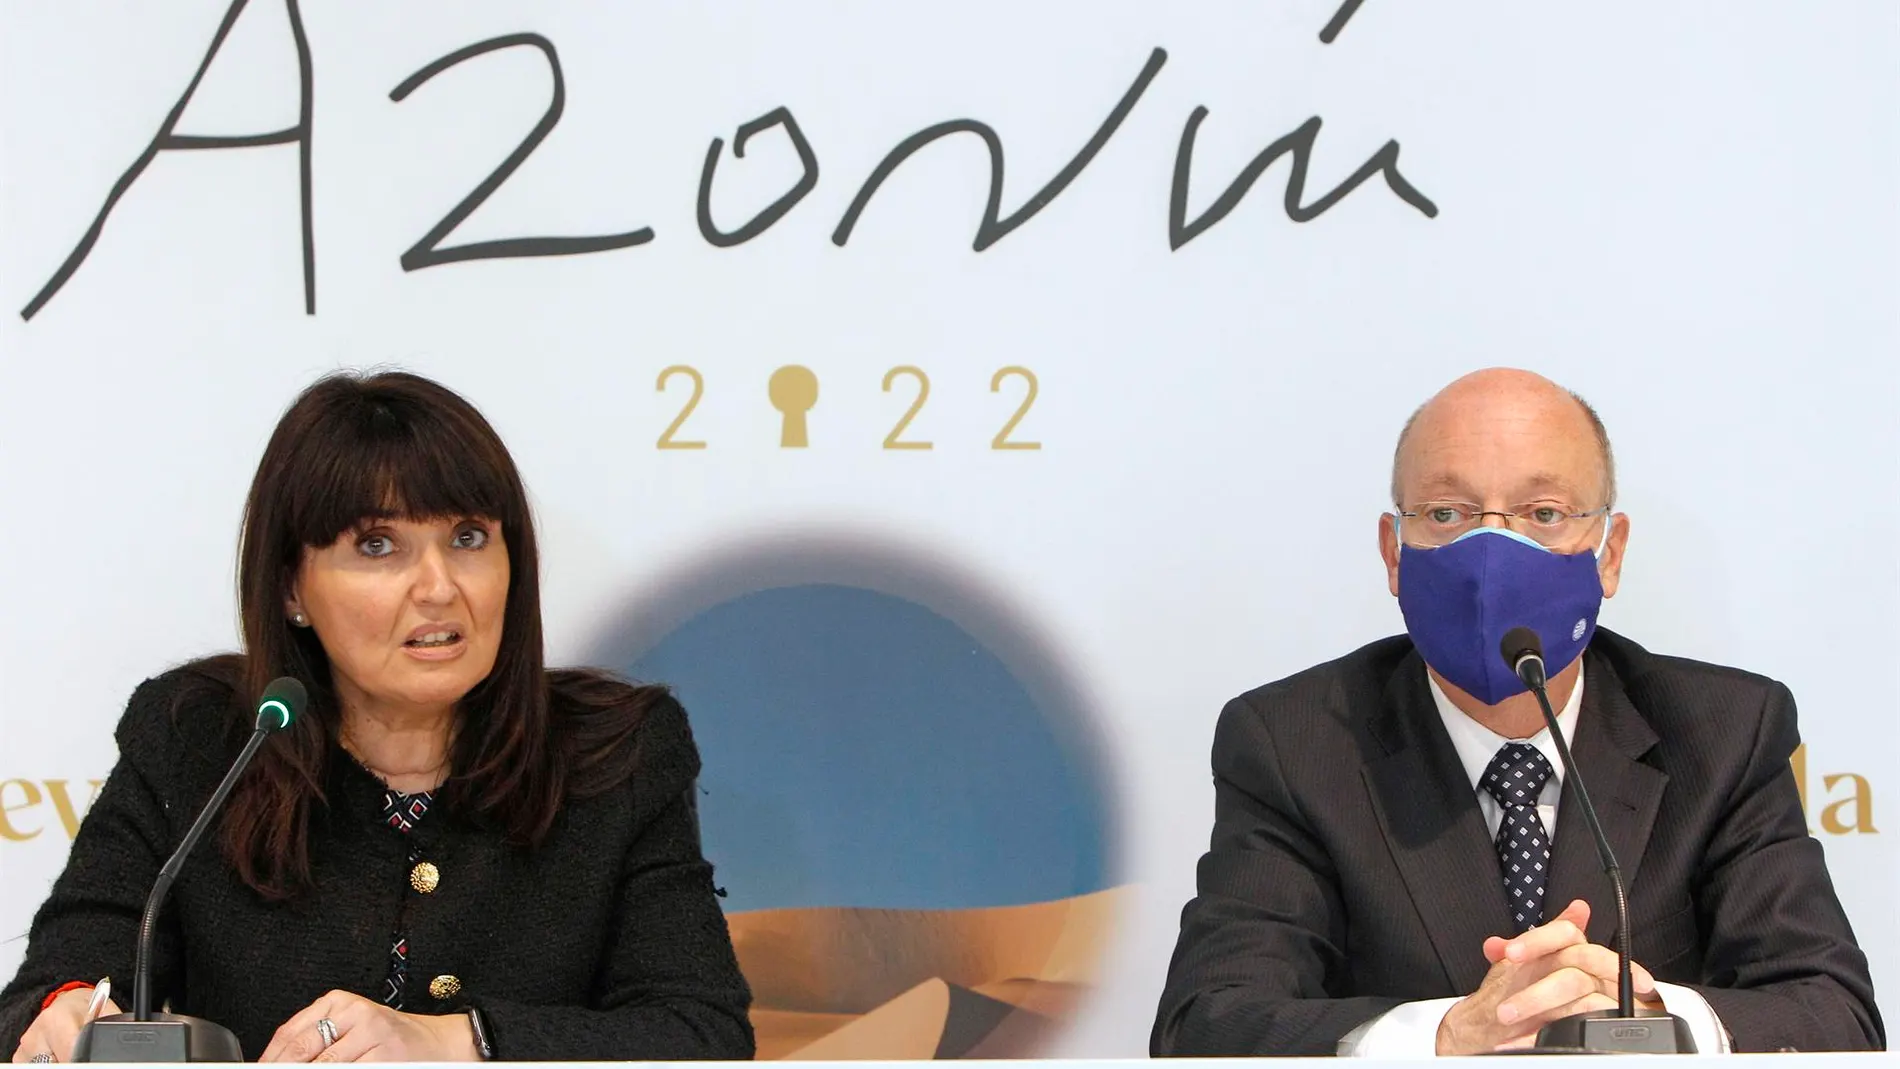 Presentación de las finalistas del Premio Azorín 2022